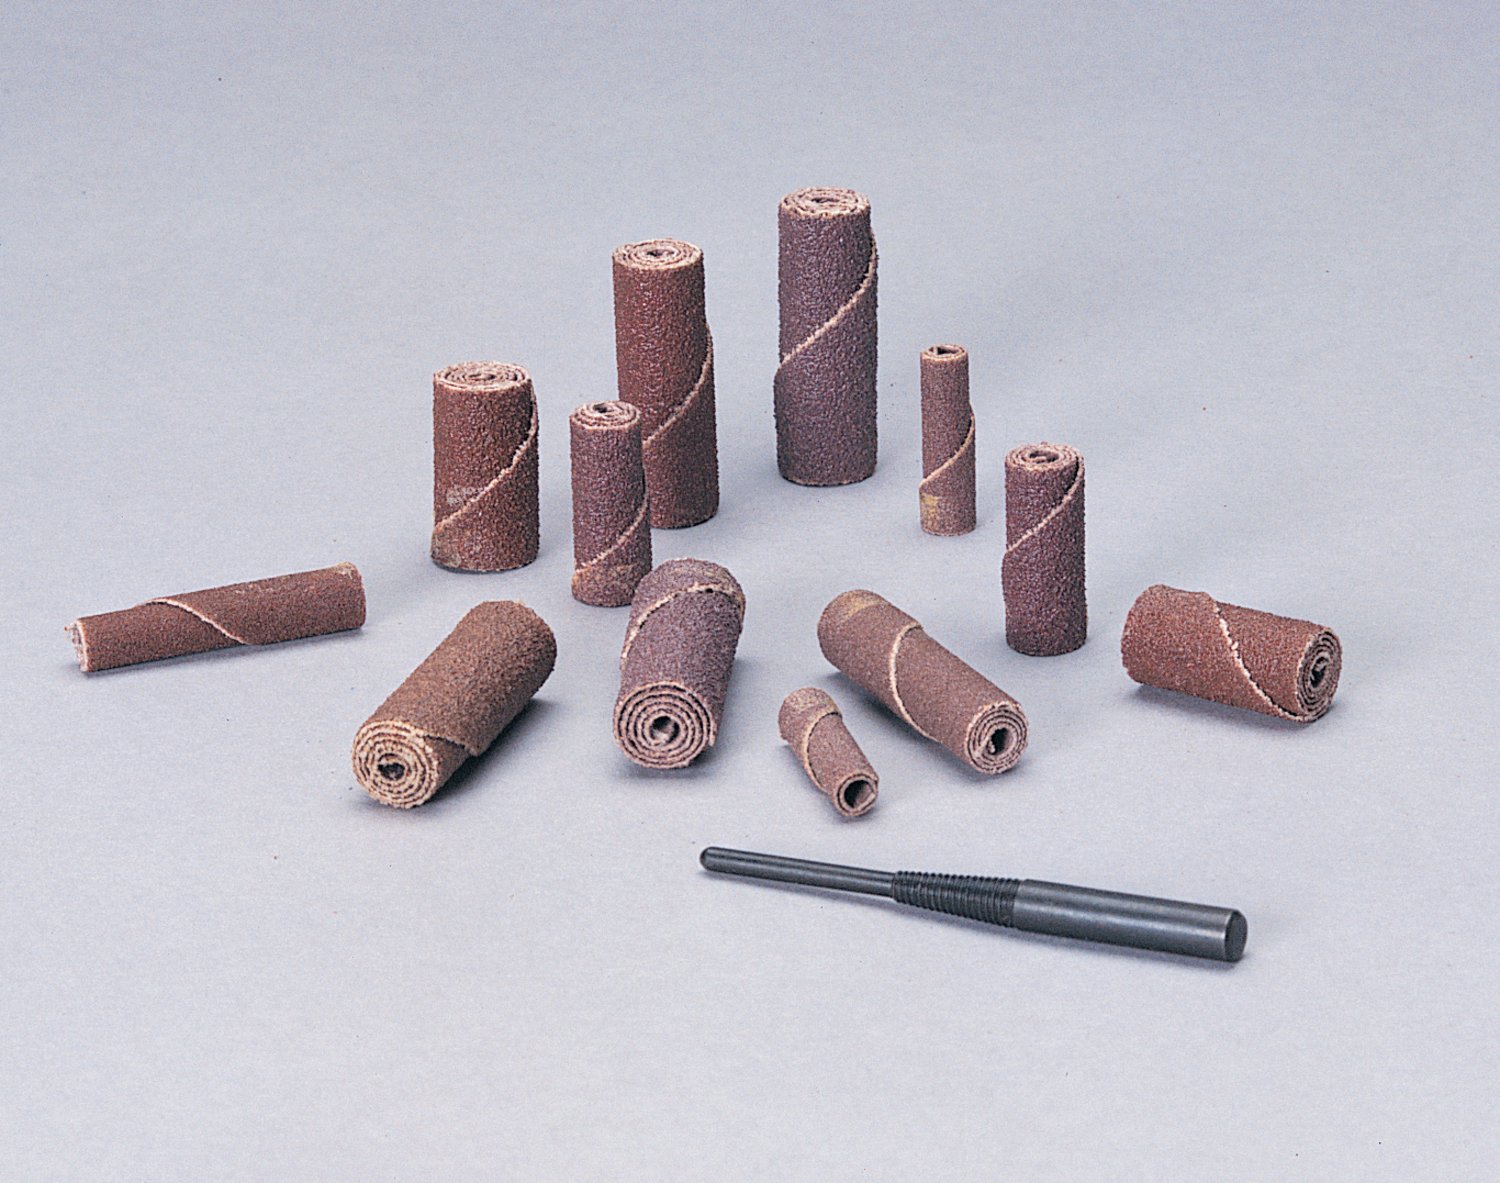 7010310888 - Standard Abrasives Zirconia Cartridge Roll, 727431, CR-ST, 60, 1/4 in x
1 in x 1/8 in, Straight, 100 ea/Case